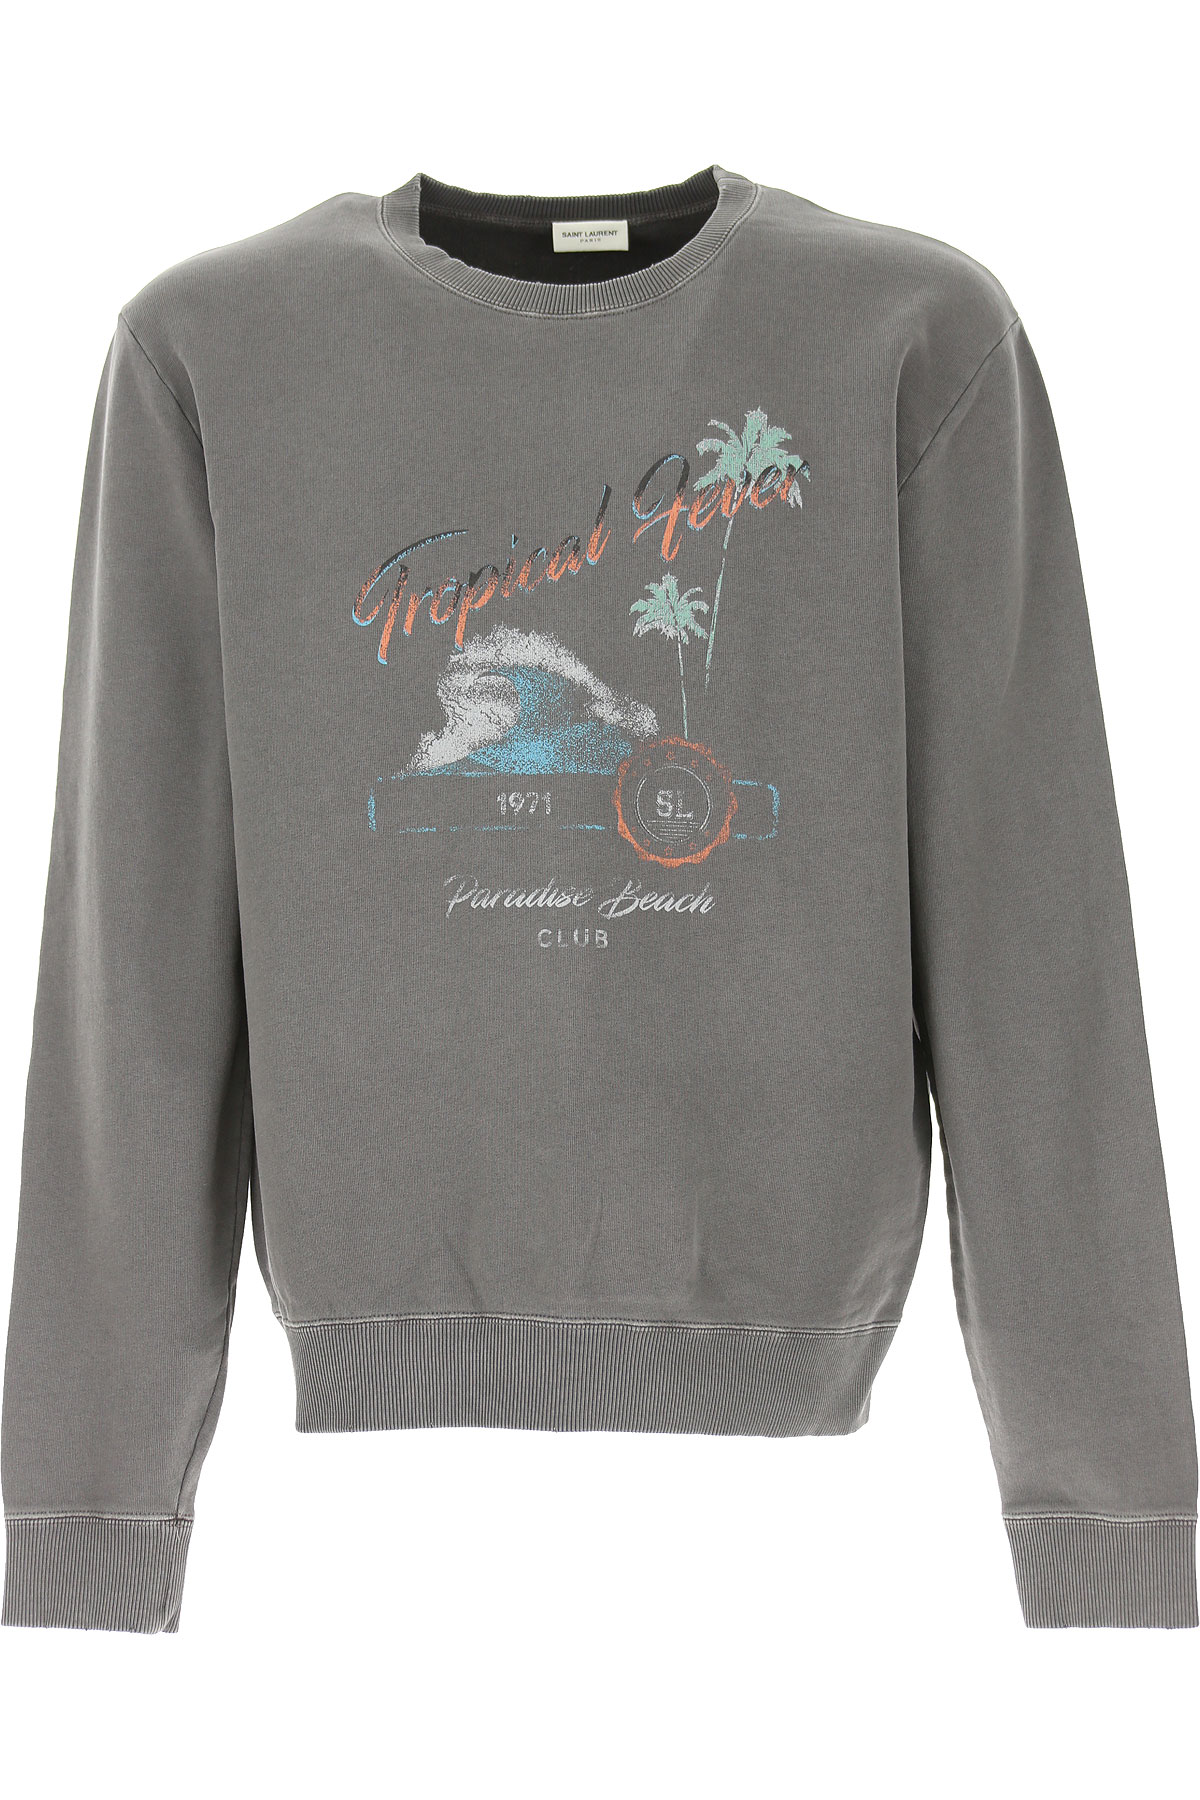 Yves Saint Laurent Sweatshirt für Herren, Kapuzenpulli, Hoodie, Sweats Günstig im Outlet Sale, Grau, Baumwolle, 2017, L M S XL